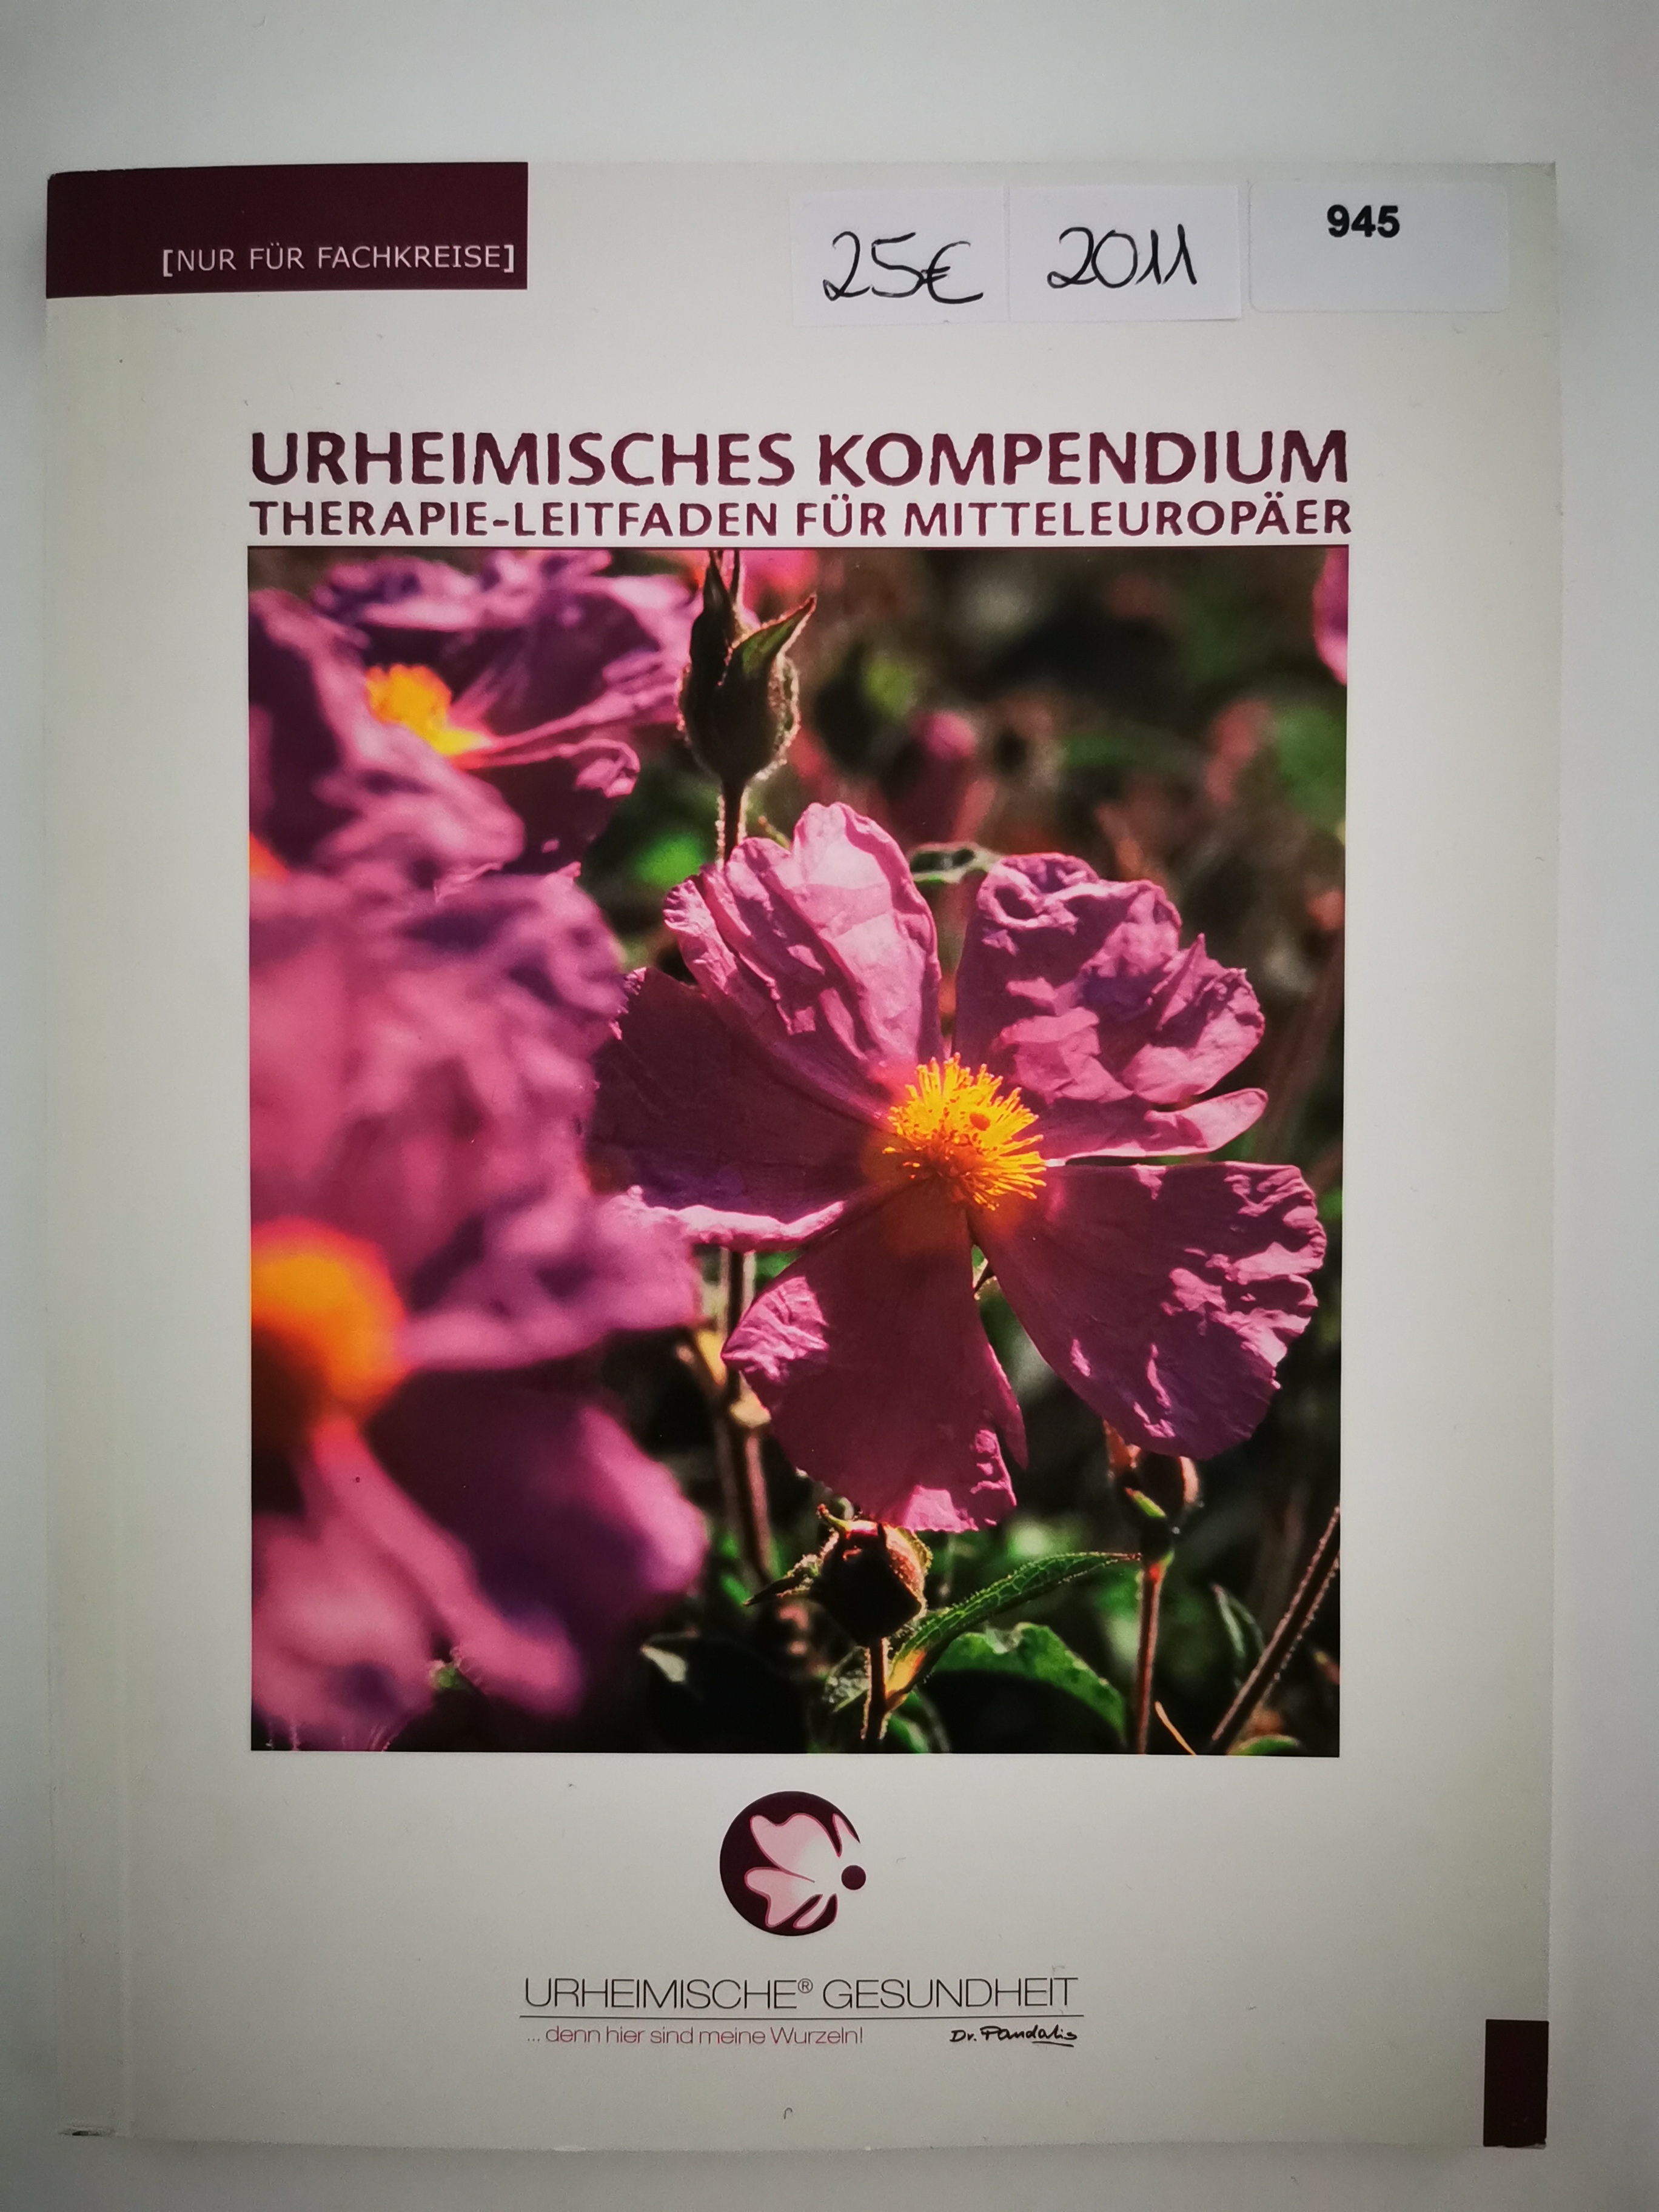 1x Urheimische Gesundheit Dr. Pandalis Kompendium 2011